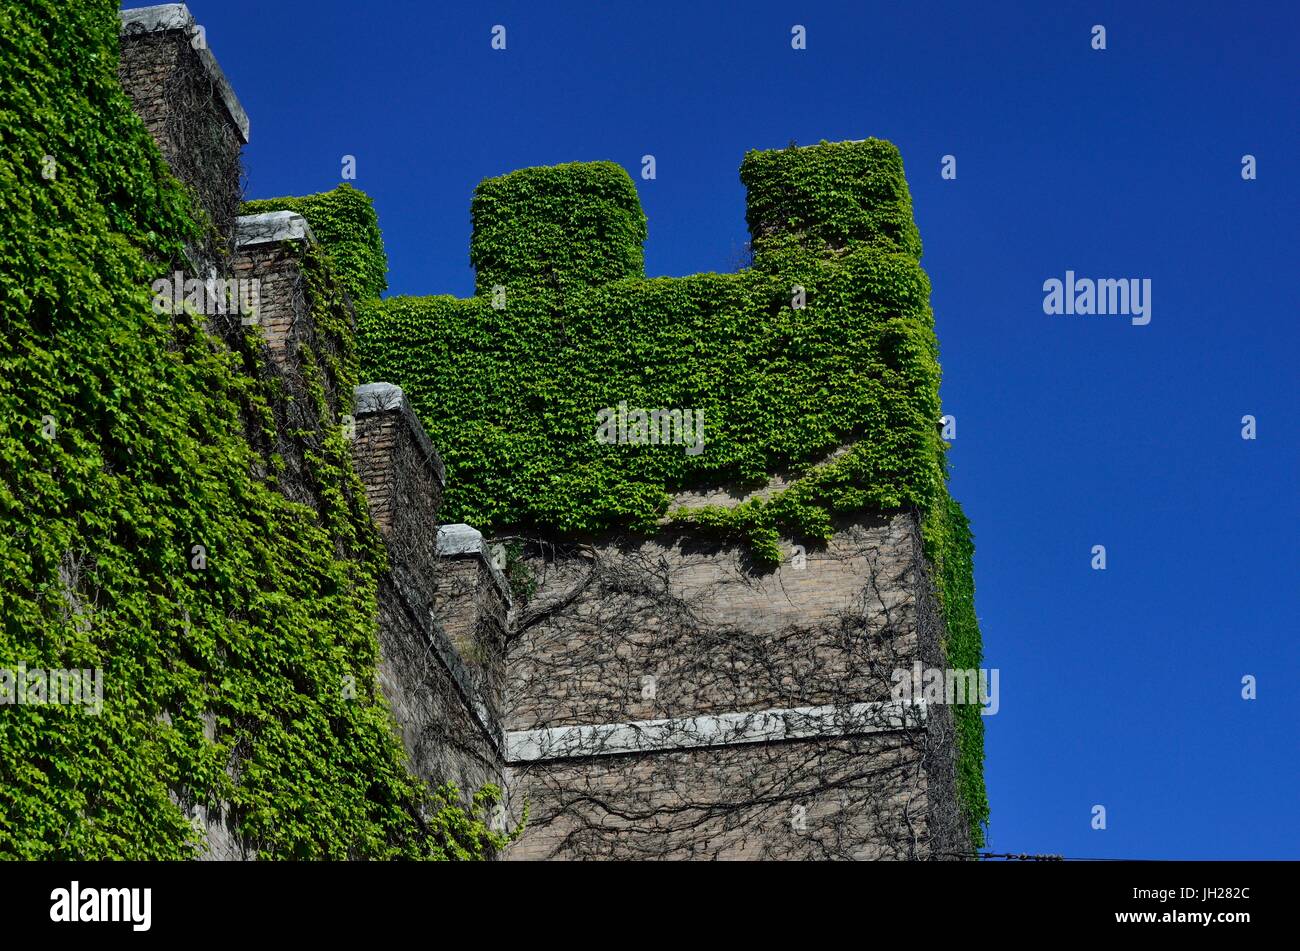 De belles plantes sur un bâtiment, la ville de Rome, Italie Banque D'Images